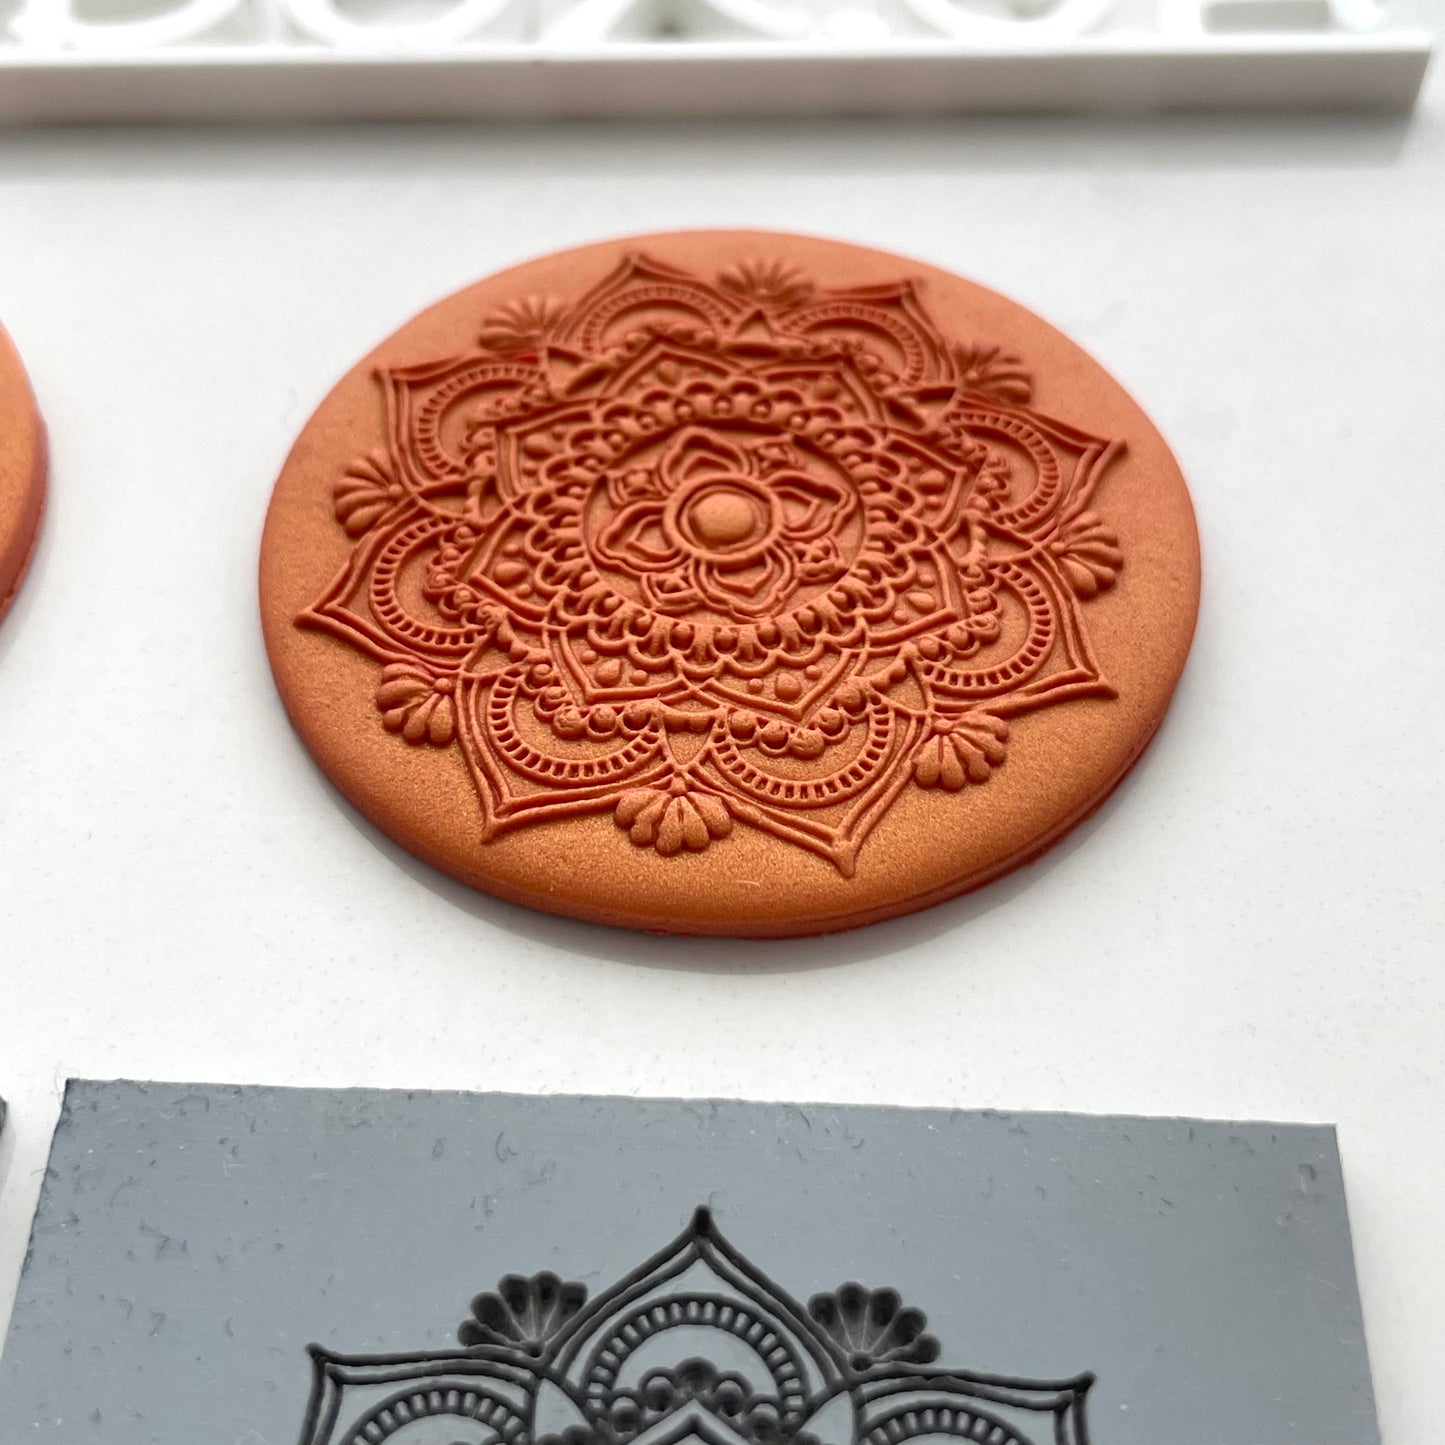 Mandala texture mat pair